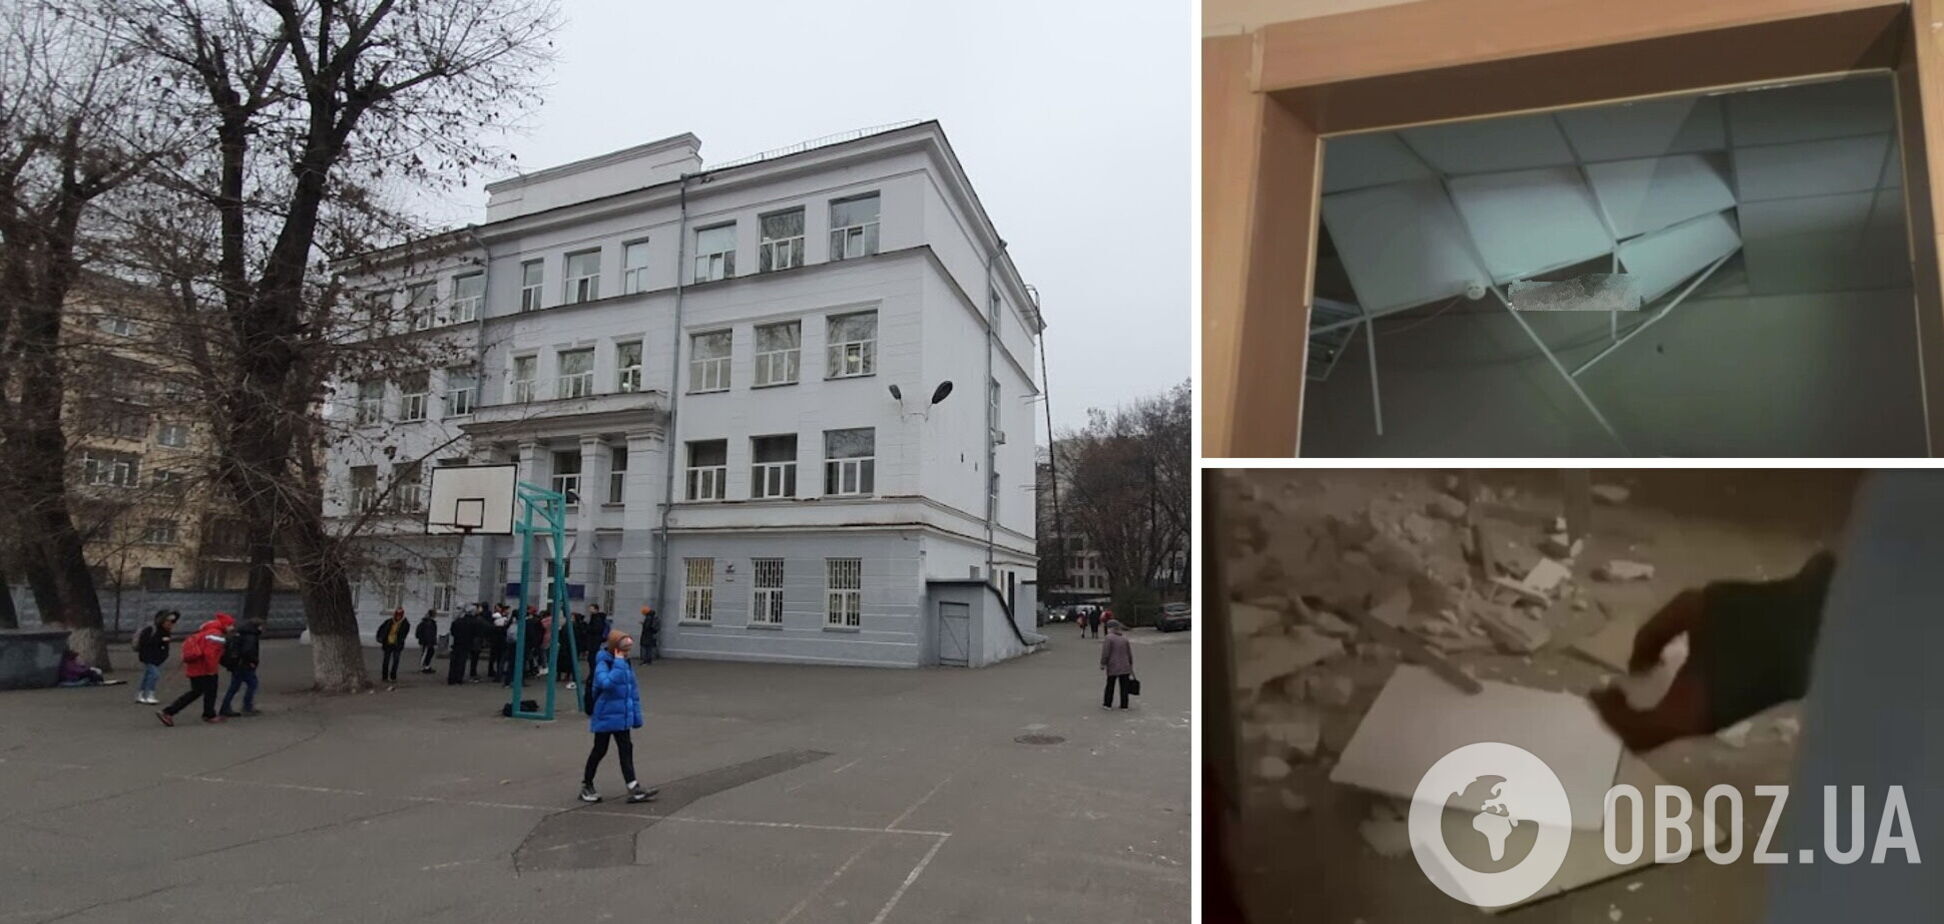 Подія сталась у школі в центрі Києва